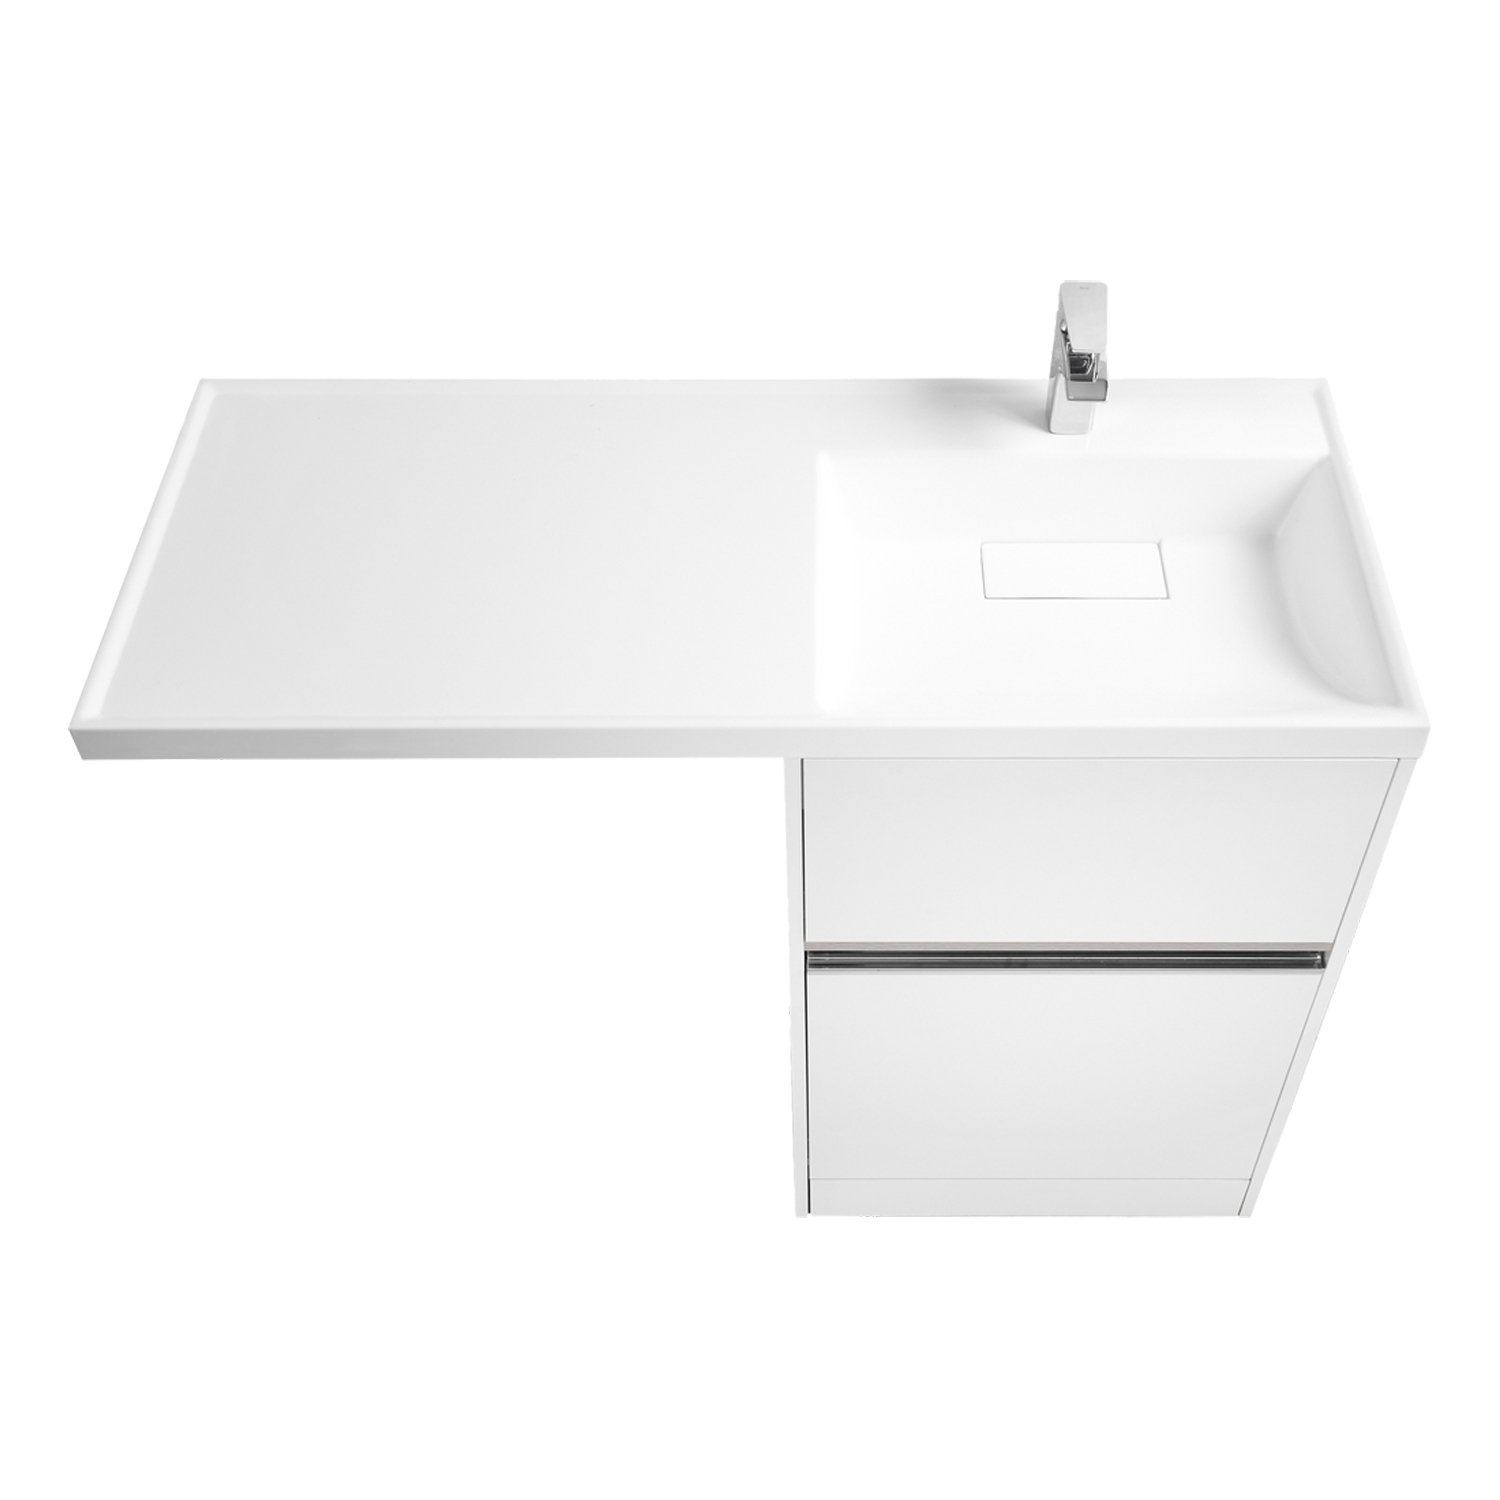 Мебель для ванной Акватон Лондри 120, с тумбой 60 см, цвет белый